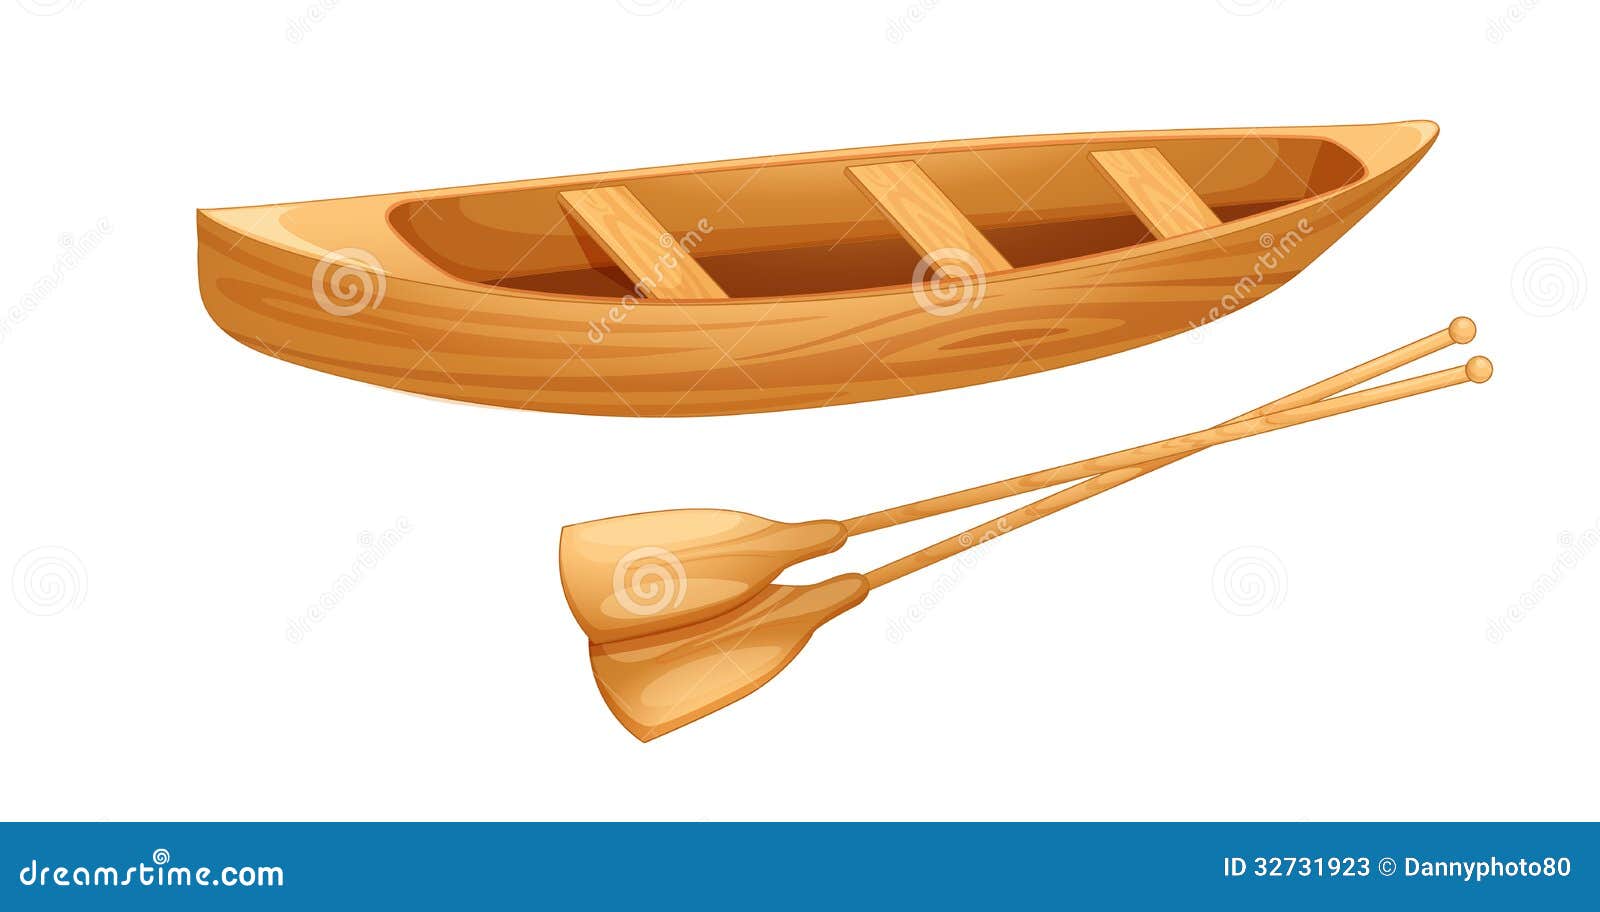 Canoe On White Stock Photos - Image: 32731923